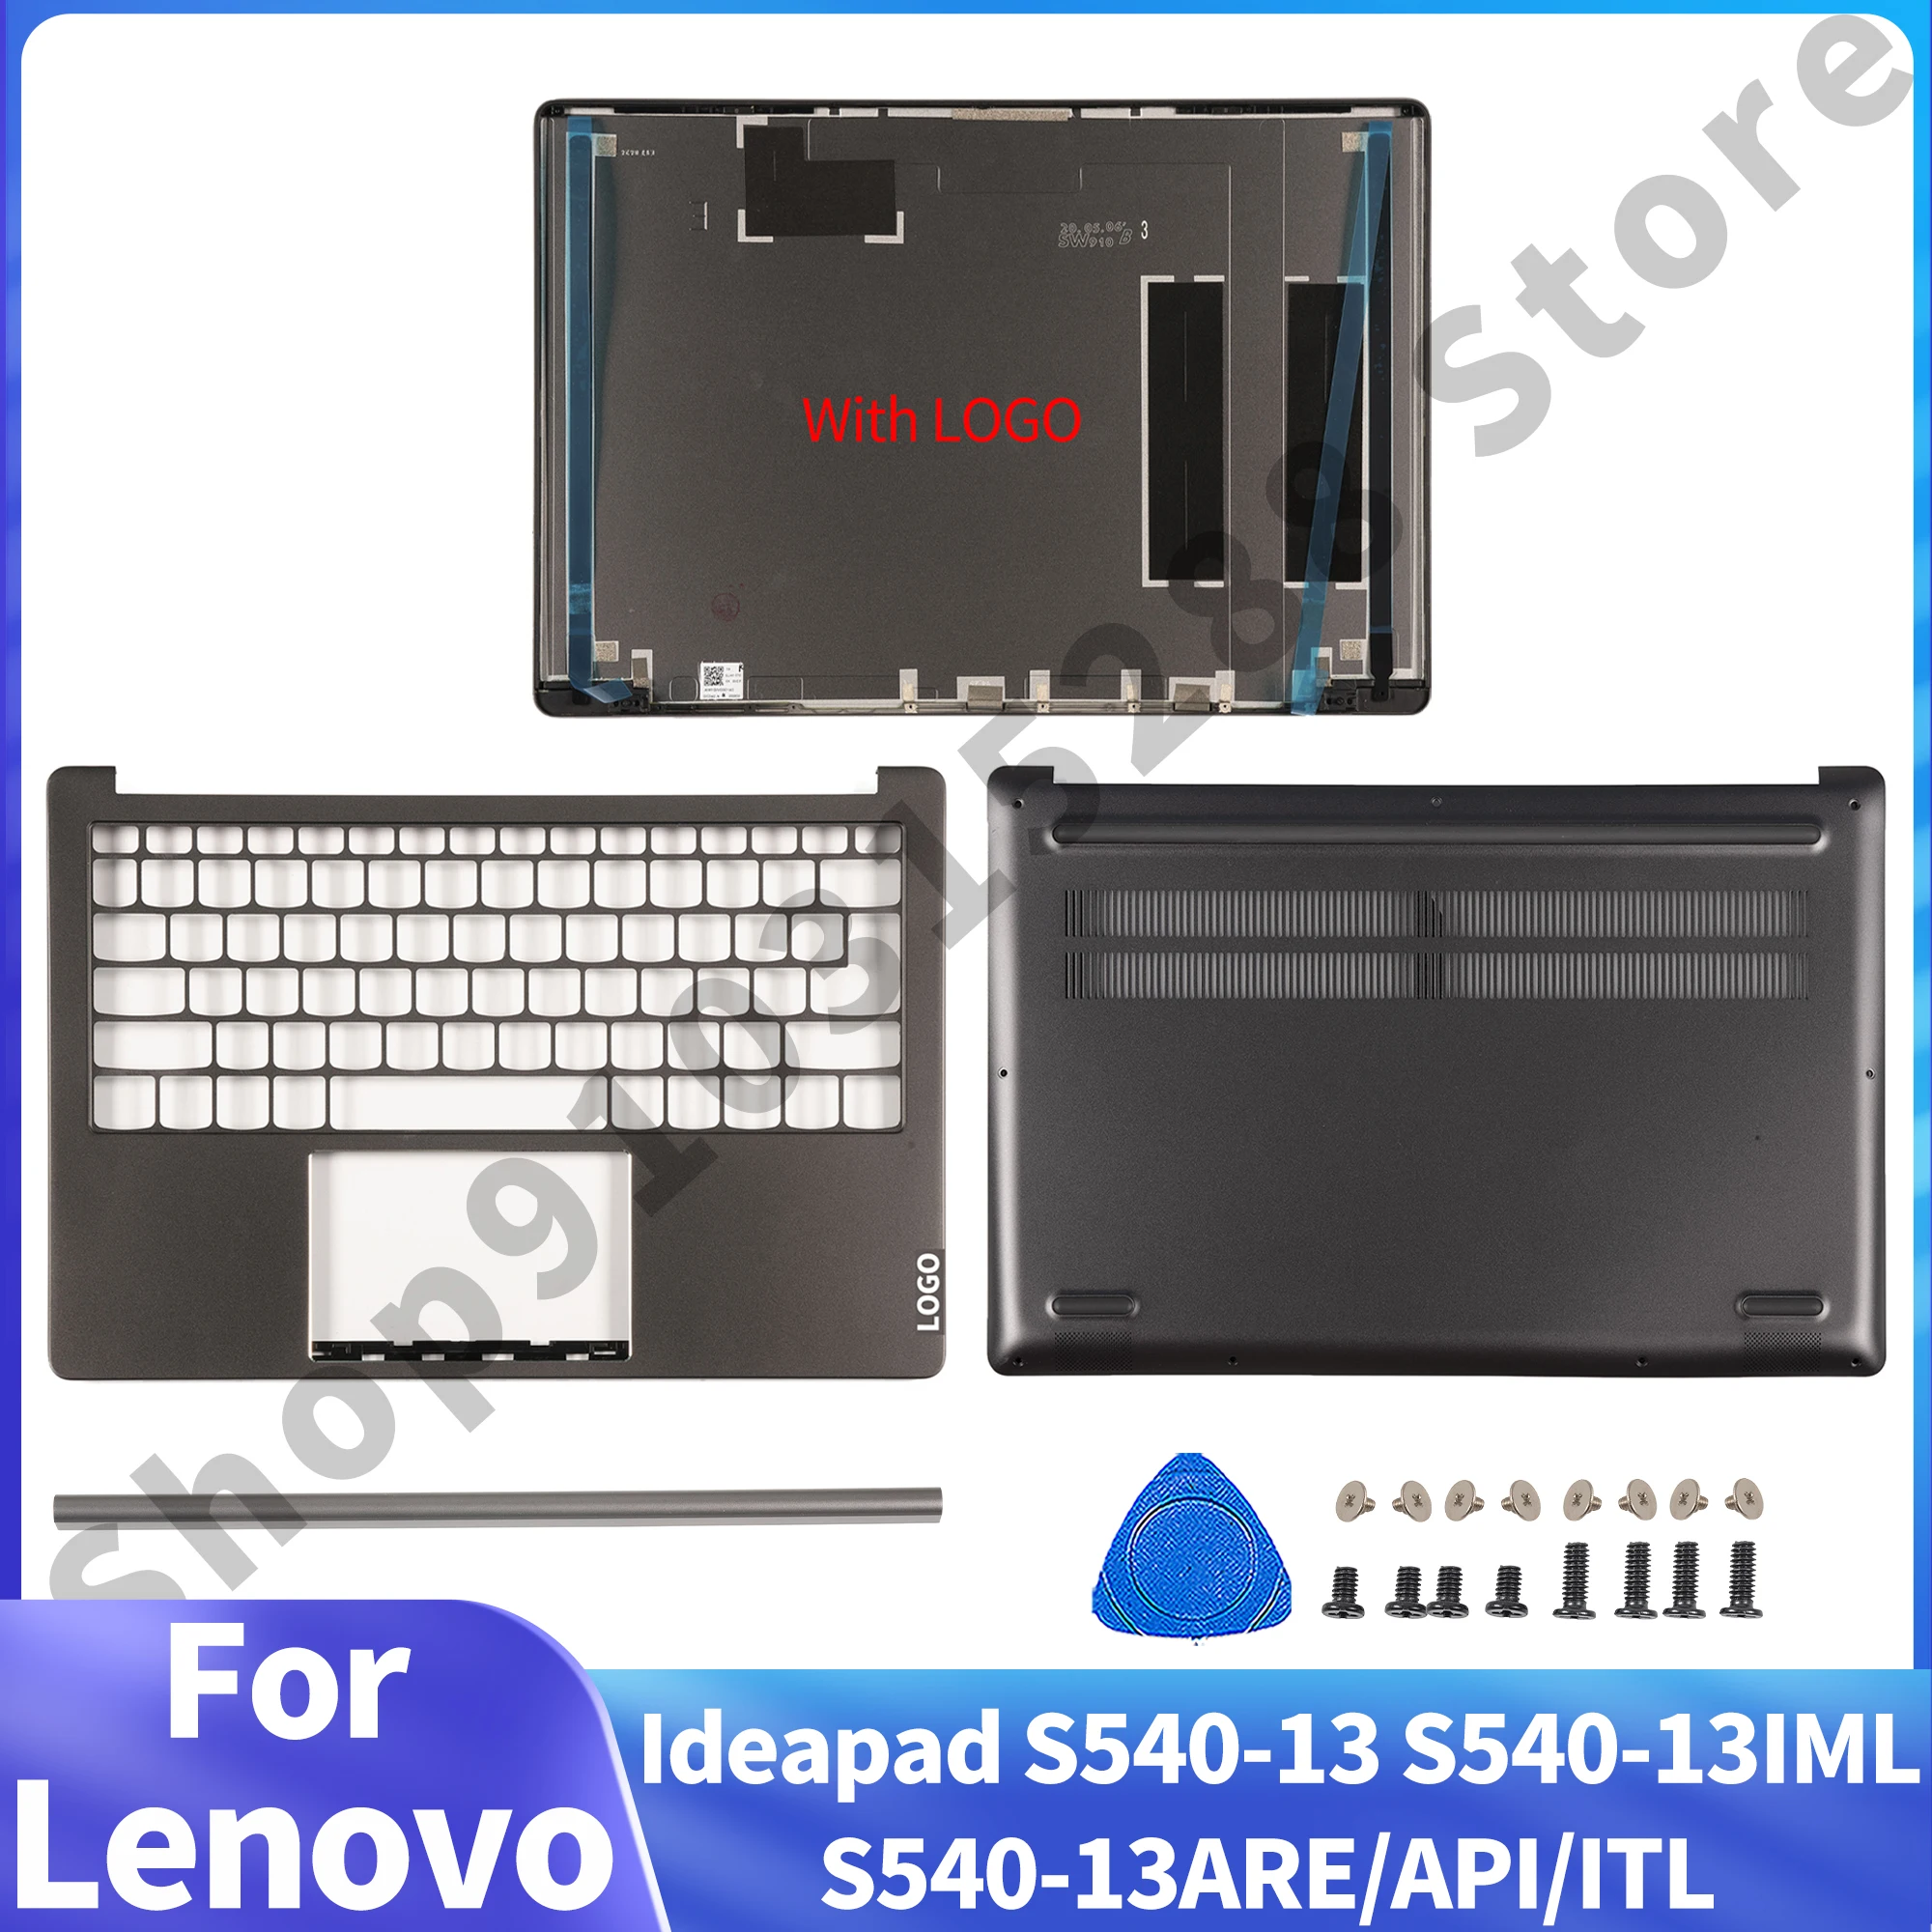 מחשב נייד חלקים עבור Lenovo Ideapad S540-13 S540-13IML S540-13ARE/API/ITL LCD הכיסוי האחורי Palmrest בתחתית התיק מחברת המקרים להחליף - 0